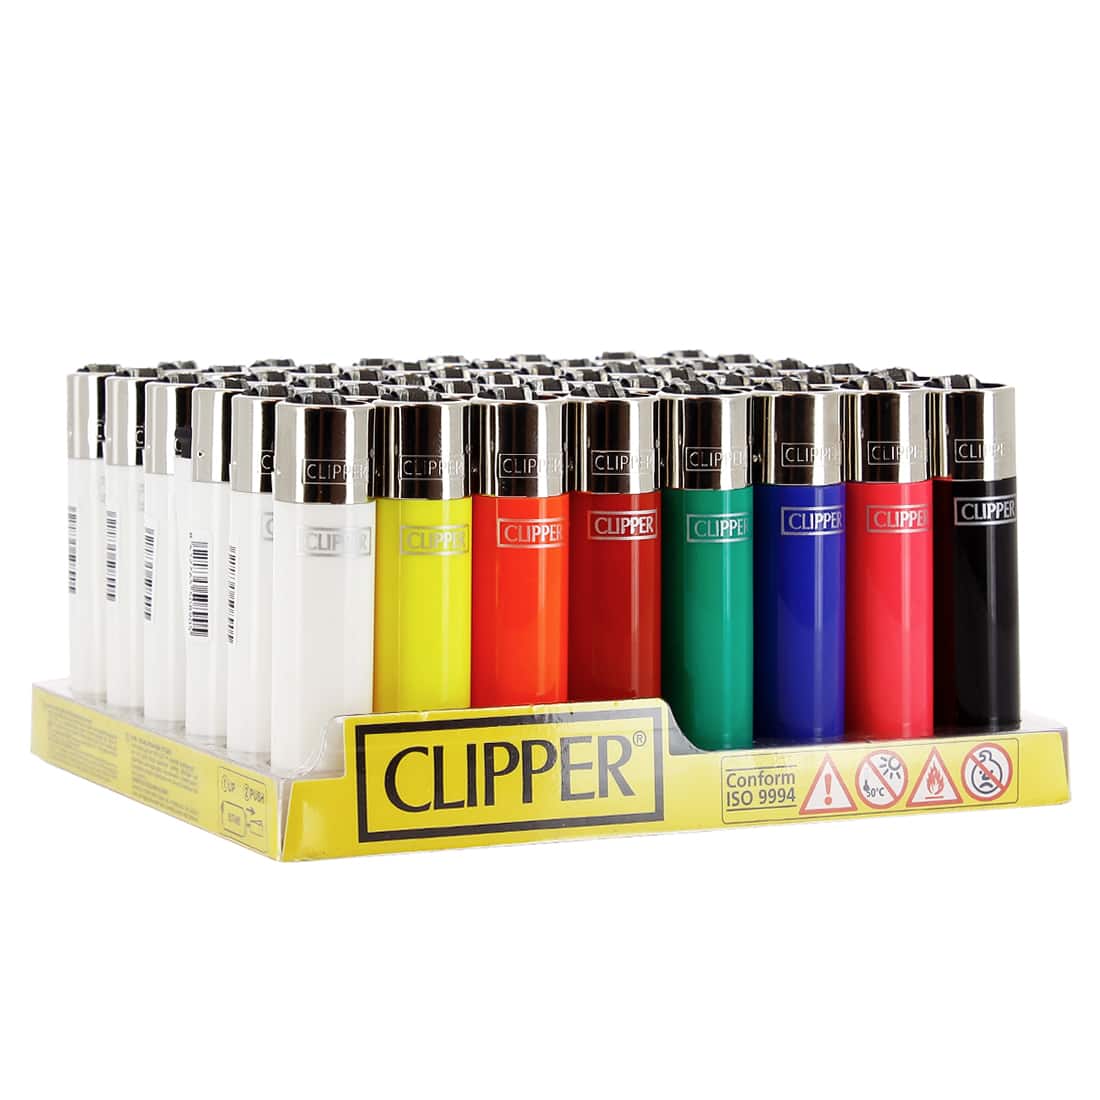 Clipper briquets complet 40 Box mix couleurs